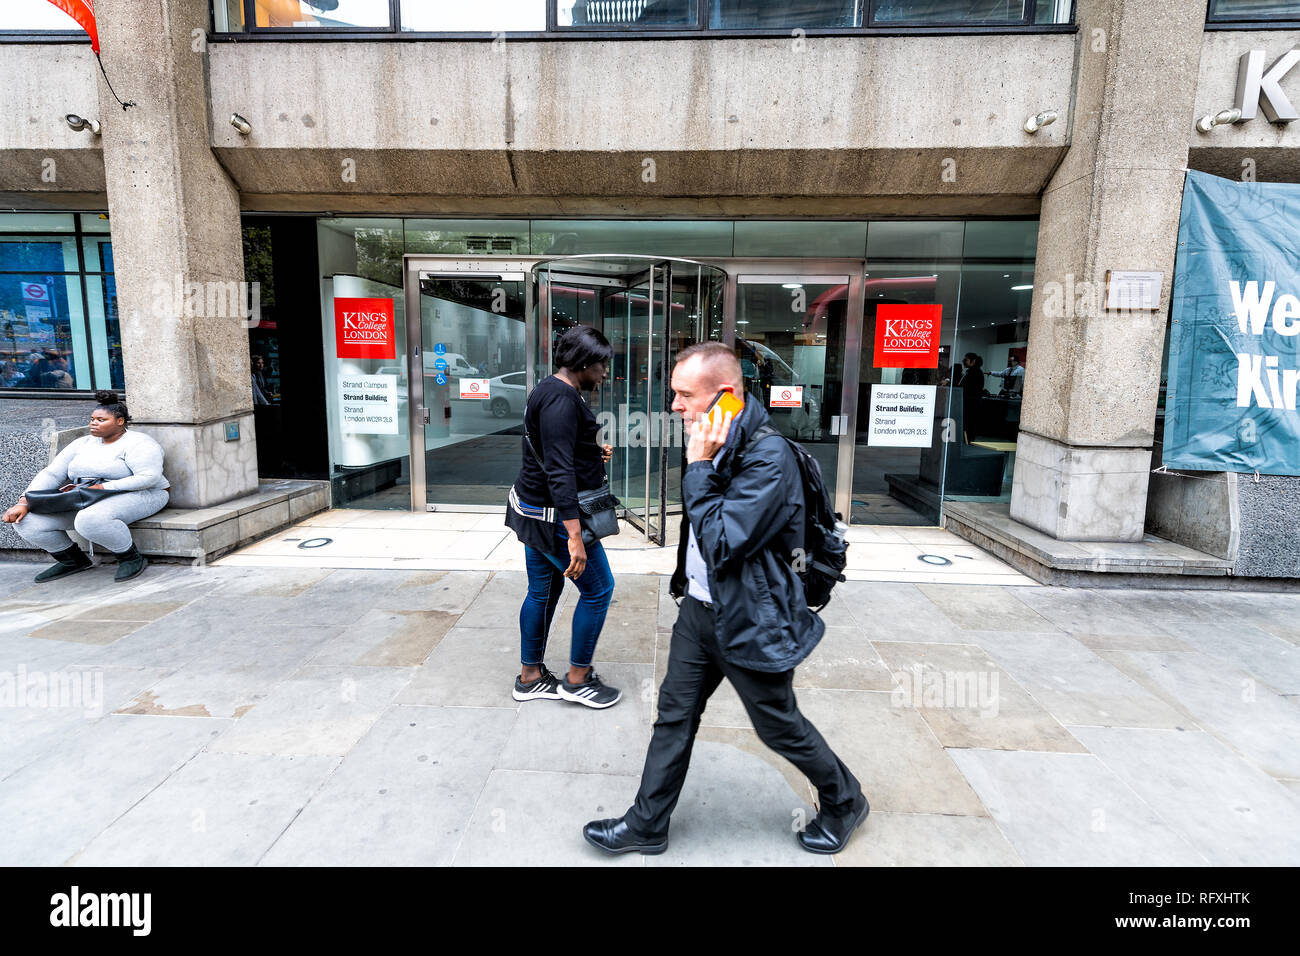 Londres, Royaume-Uni - 12 septembre 2018 : King's College signe rouge sur Strand Campus Macadam bâtiment avec des gens qui marchent par entrée Banque D'Images